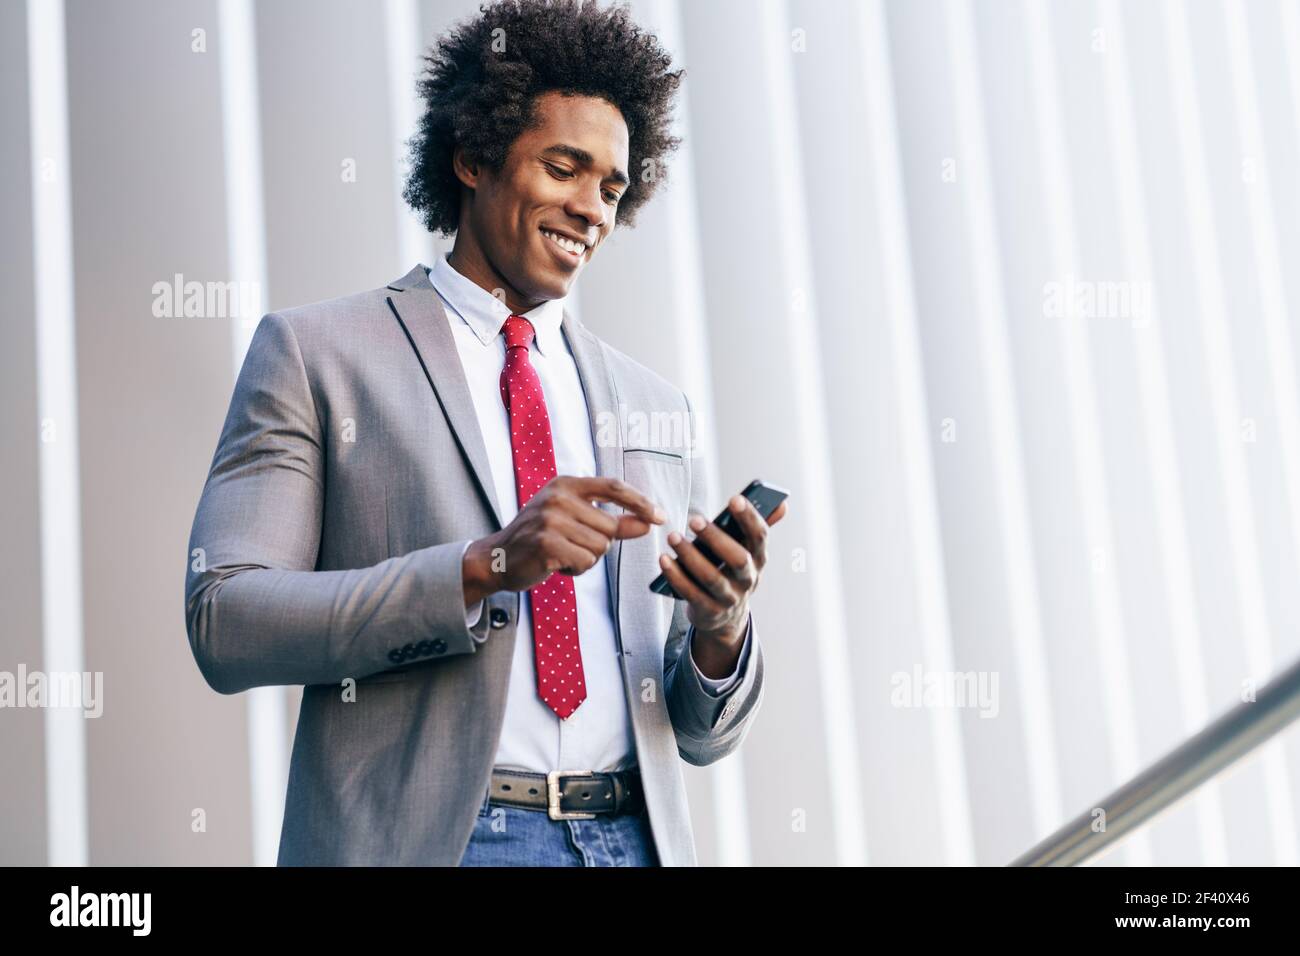 Homme d'affaires noir souriant utilisant son smartphone près d'un immeuble de bureau. Homme avec cheveux afro.. Homme d'affaires noir utilisant un smartphone près d'un immeuble de bureaux Banque D'Images